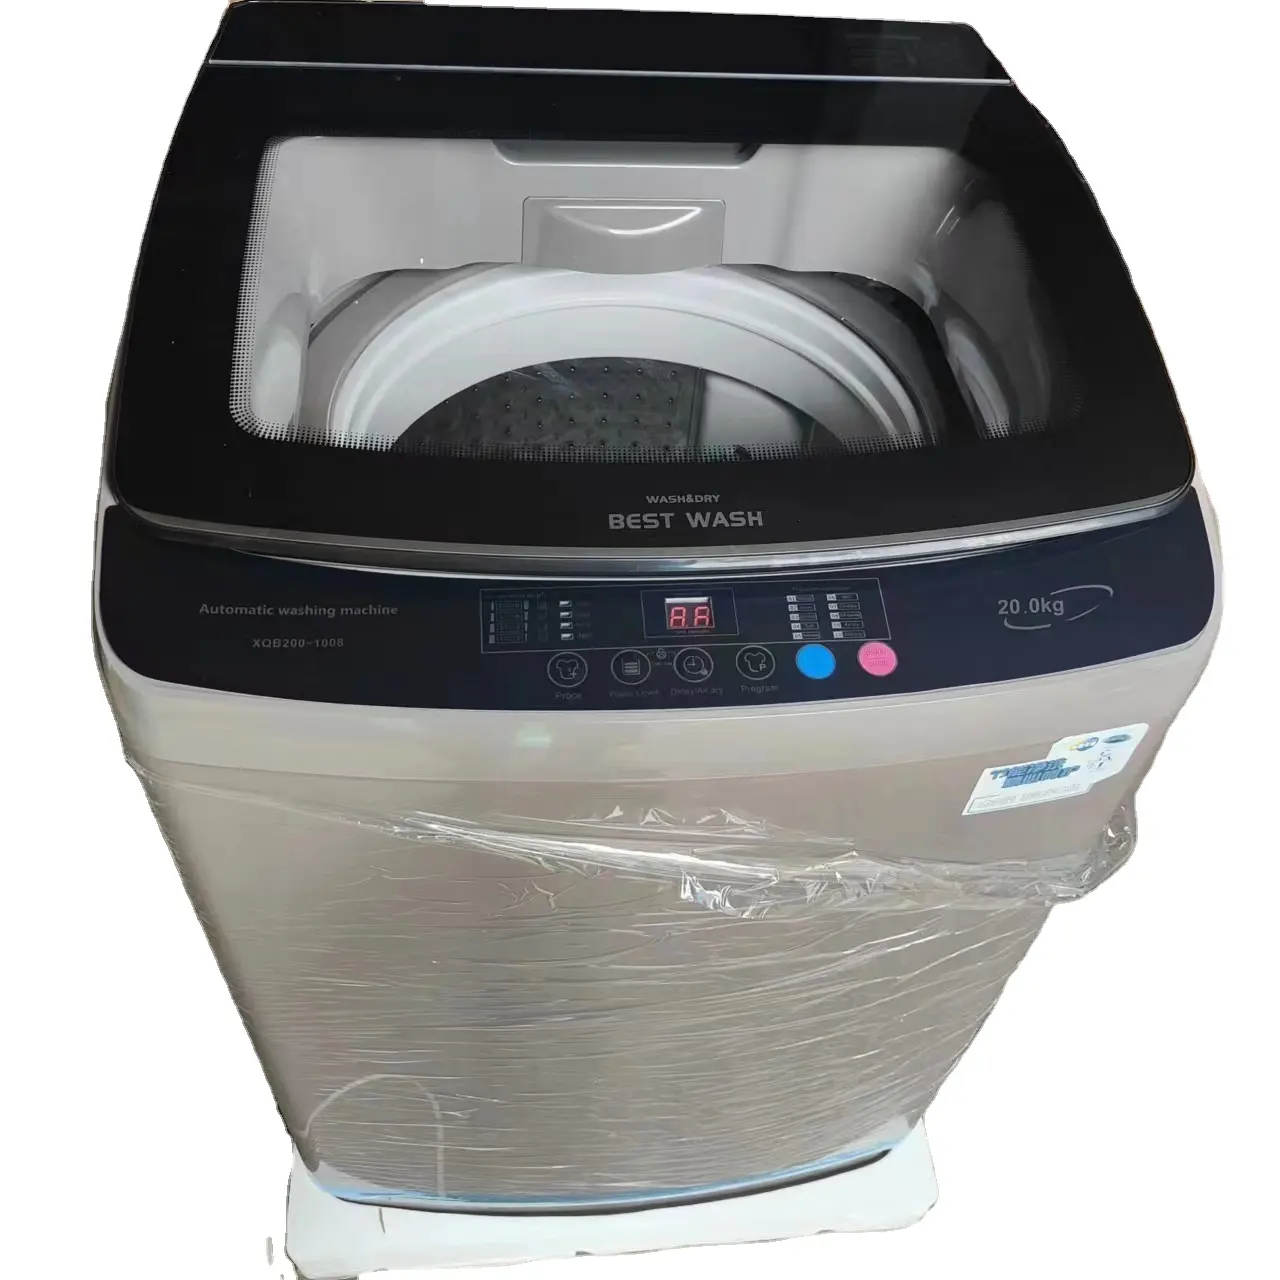 เครื่องซักผ้าระบบอัตโนมัติเต็มรูปแบบเครื่องซักผ้ามืออาชีพ20กก. ขายดีติดอันดับ